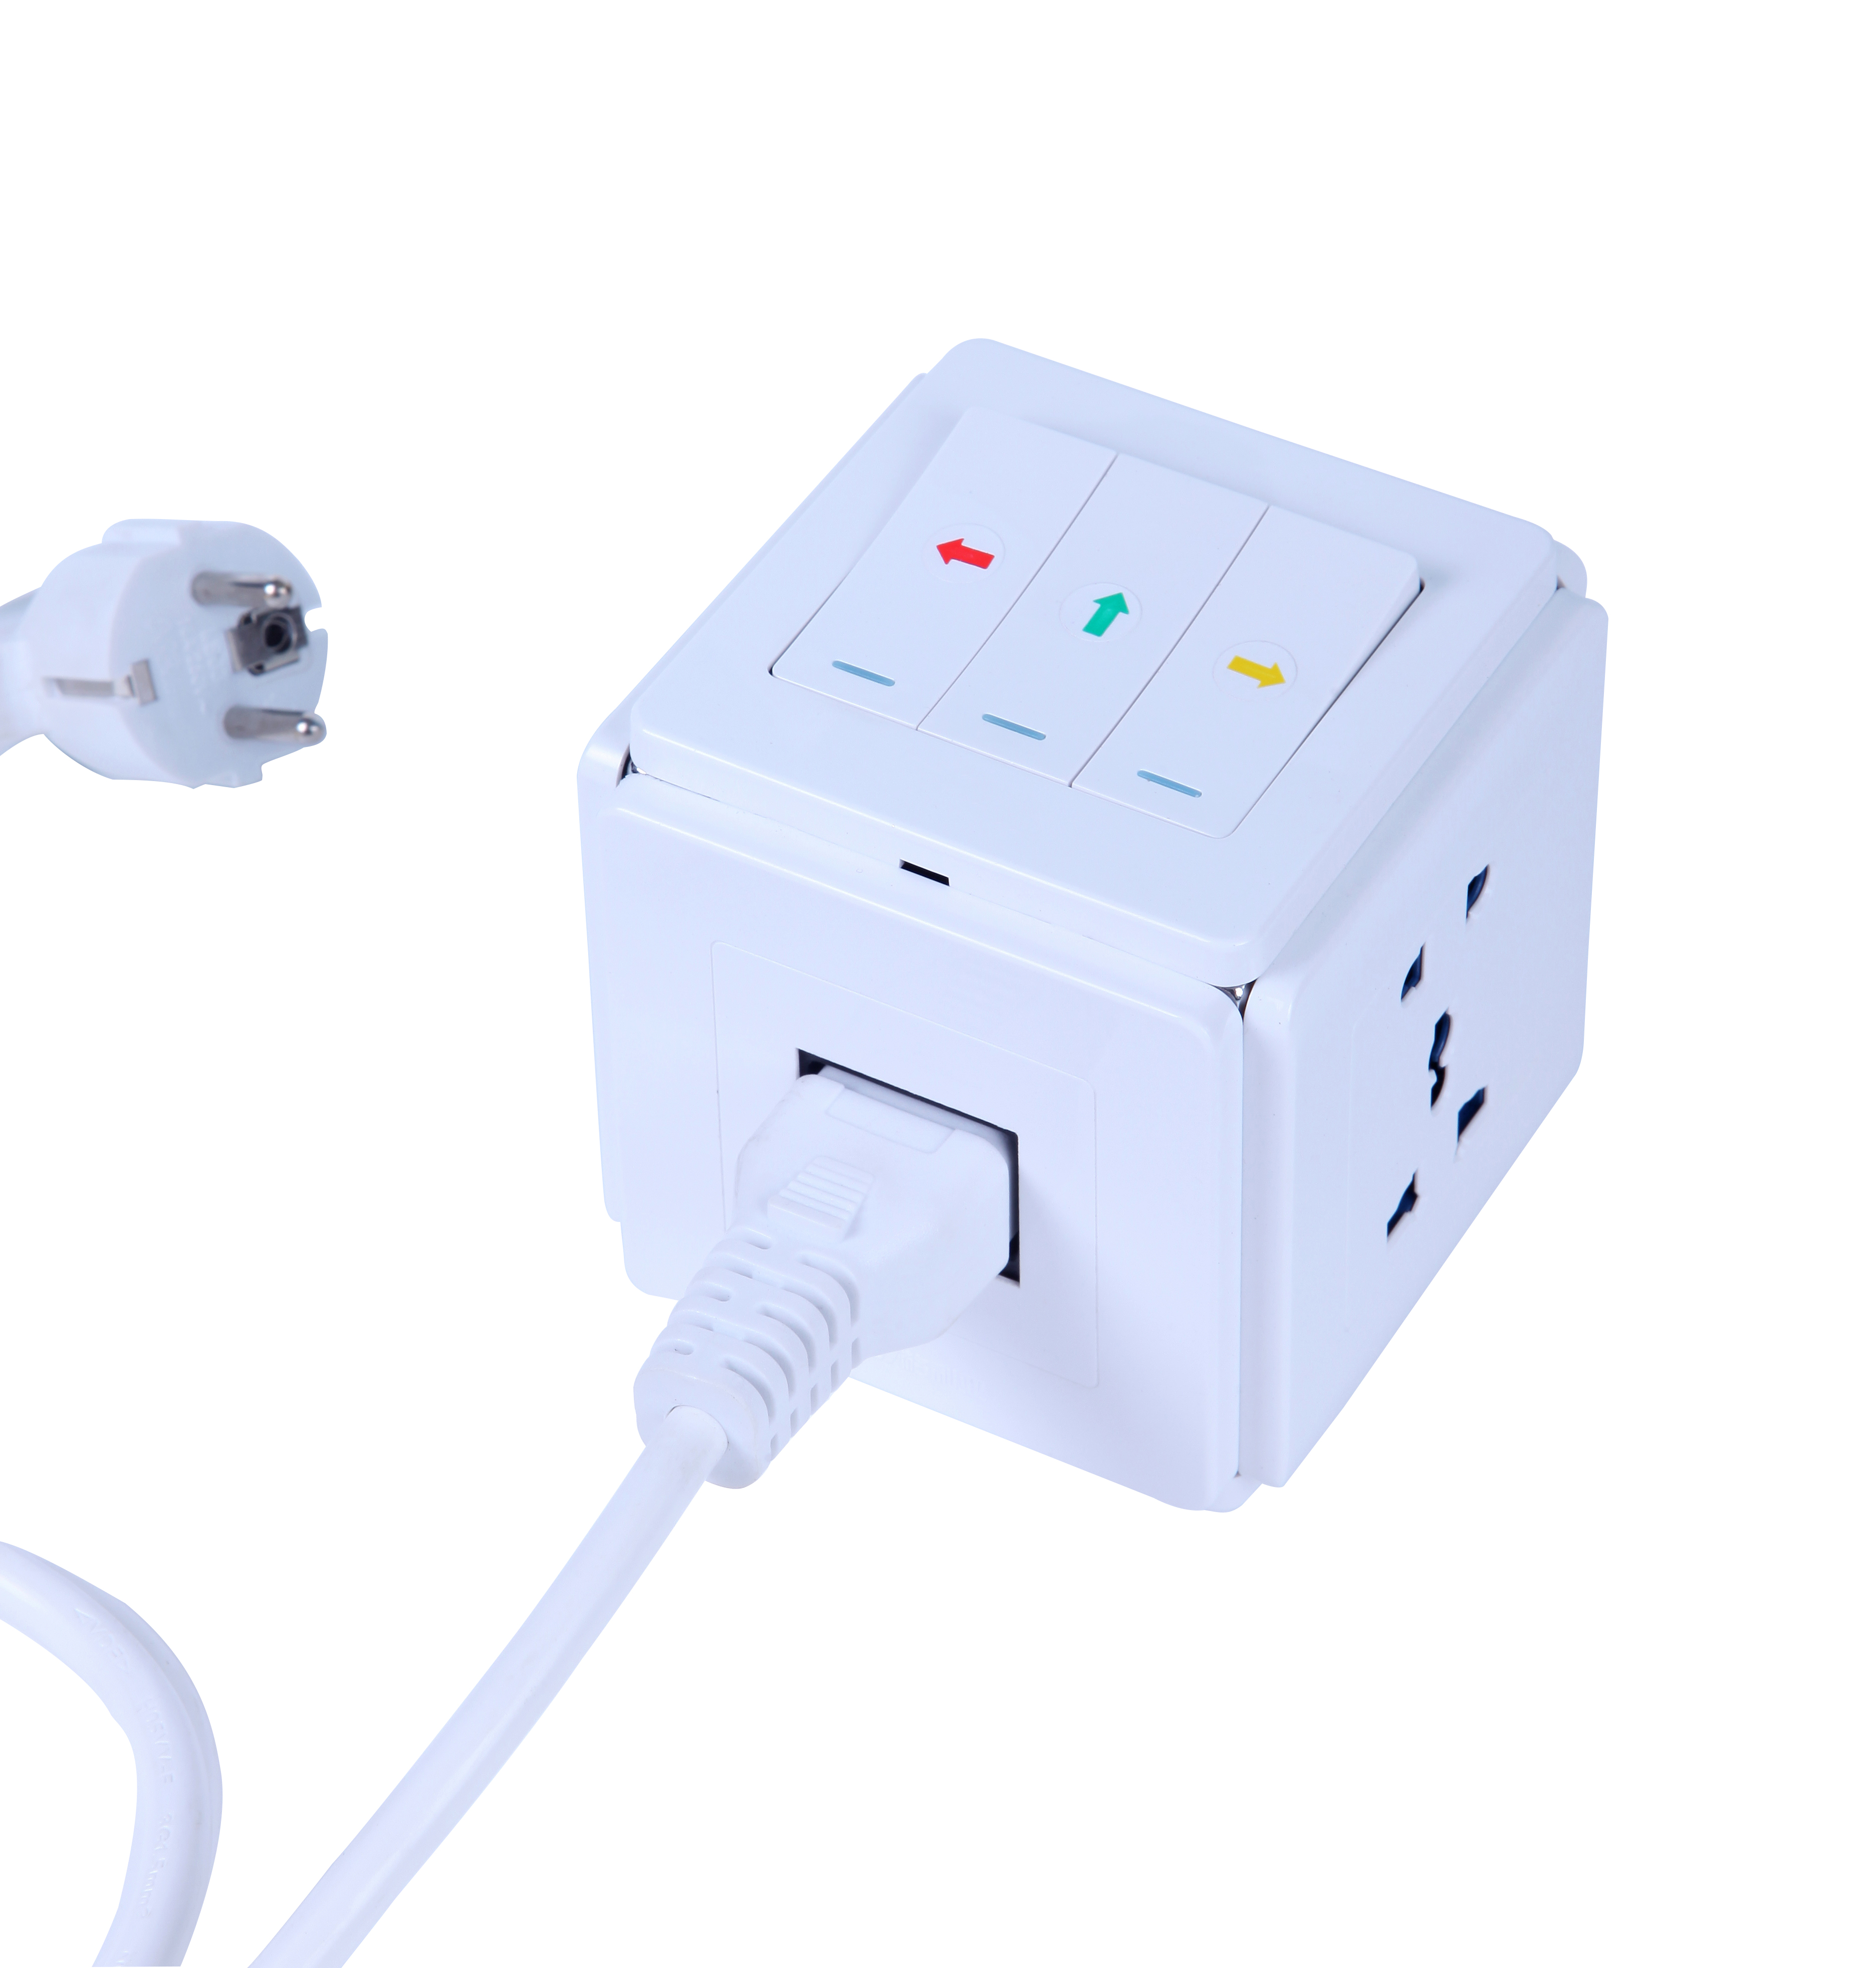 Nuovo adattatore multifunzionale Smart Power Plug Cube Socket per ufficio a risparmio energetico con cavo di alimentazione comune da 1,5 m